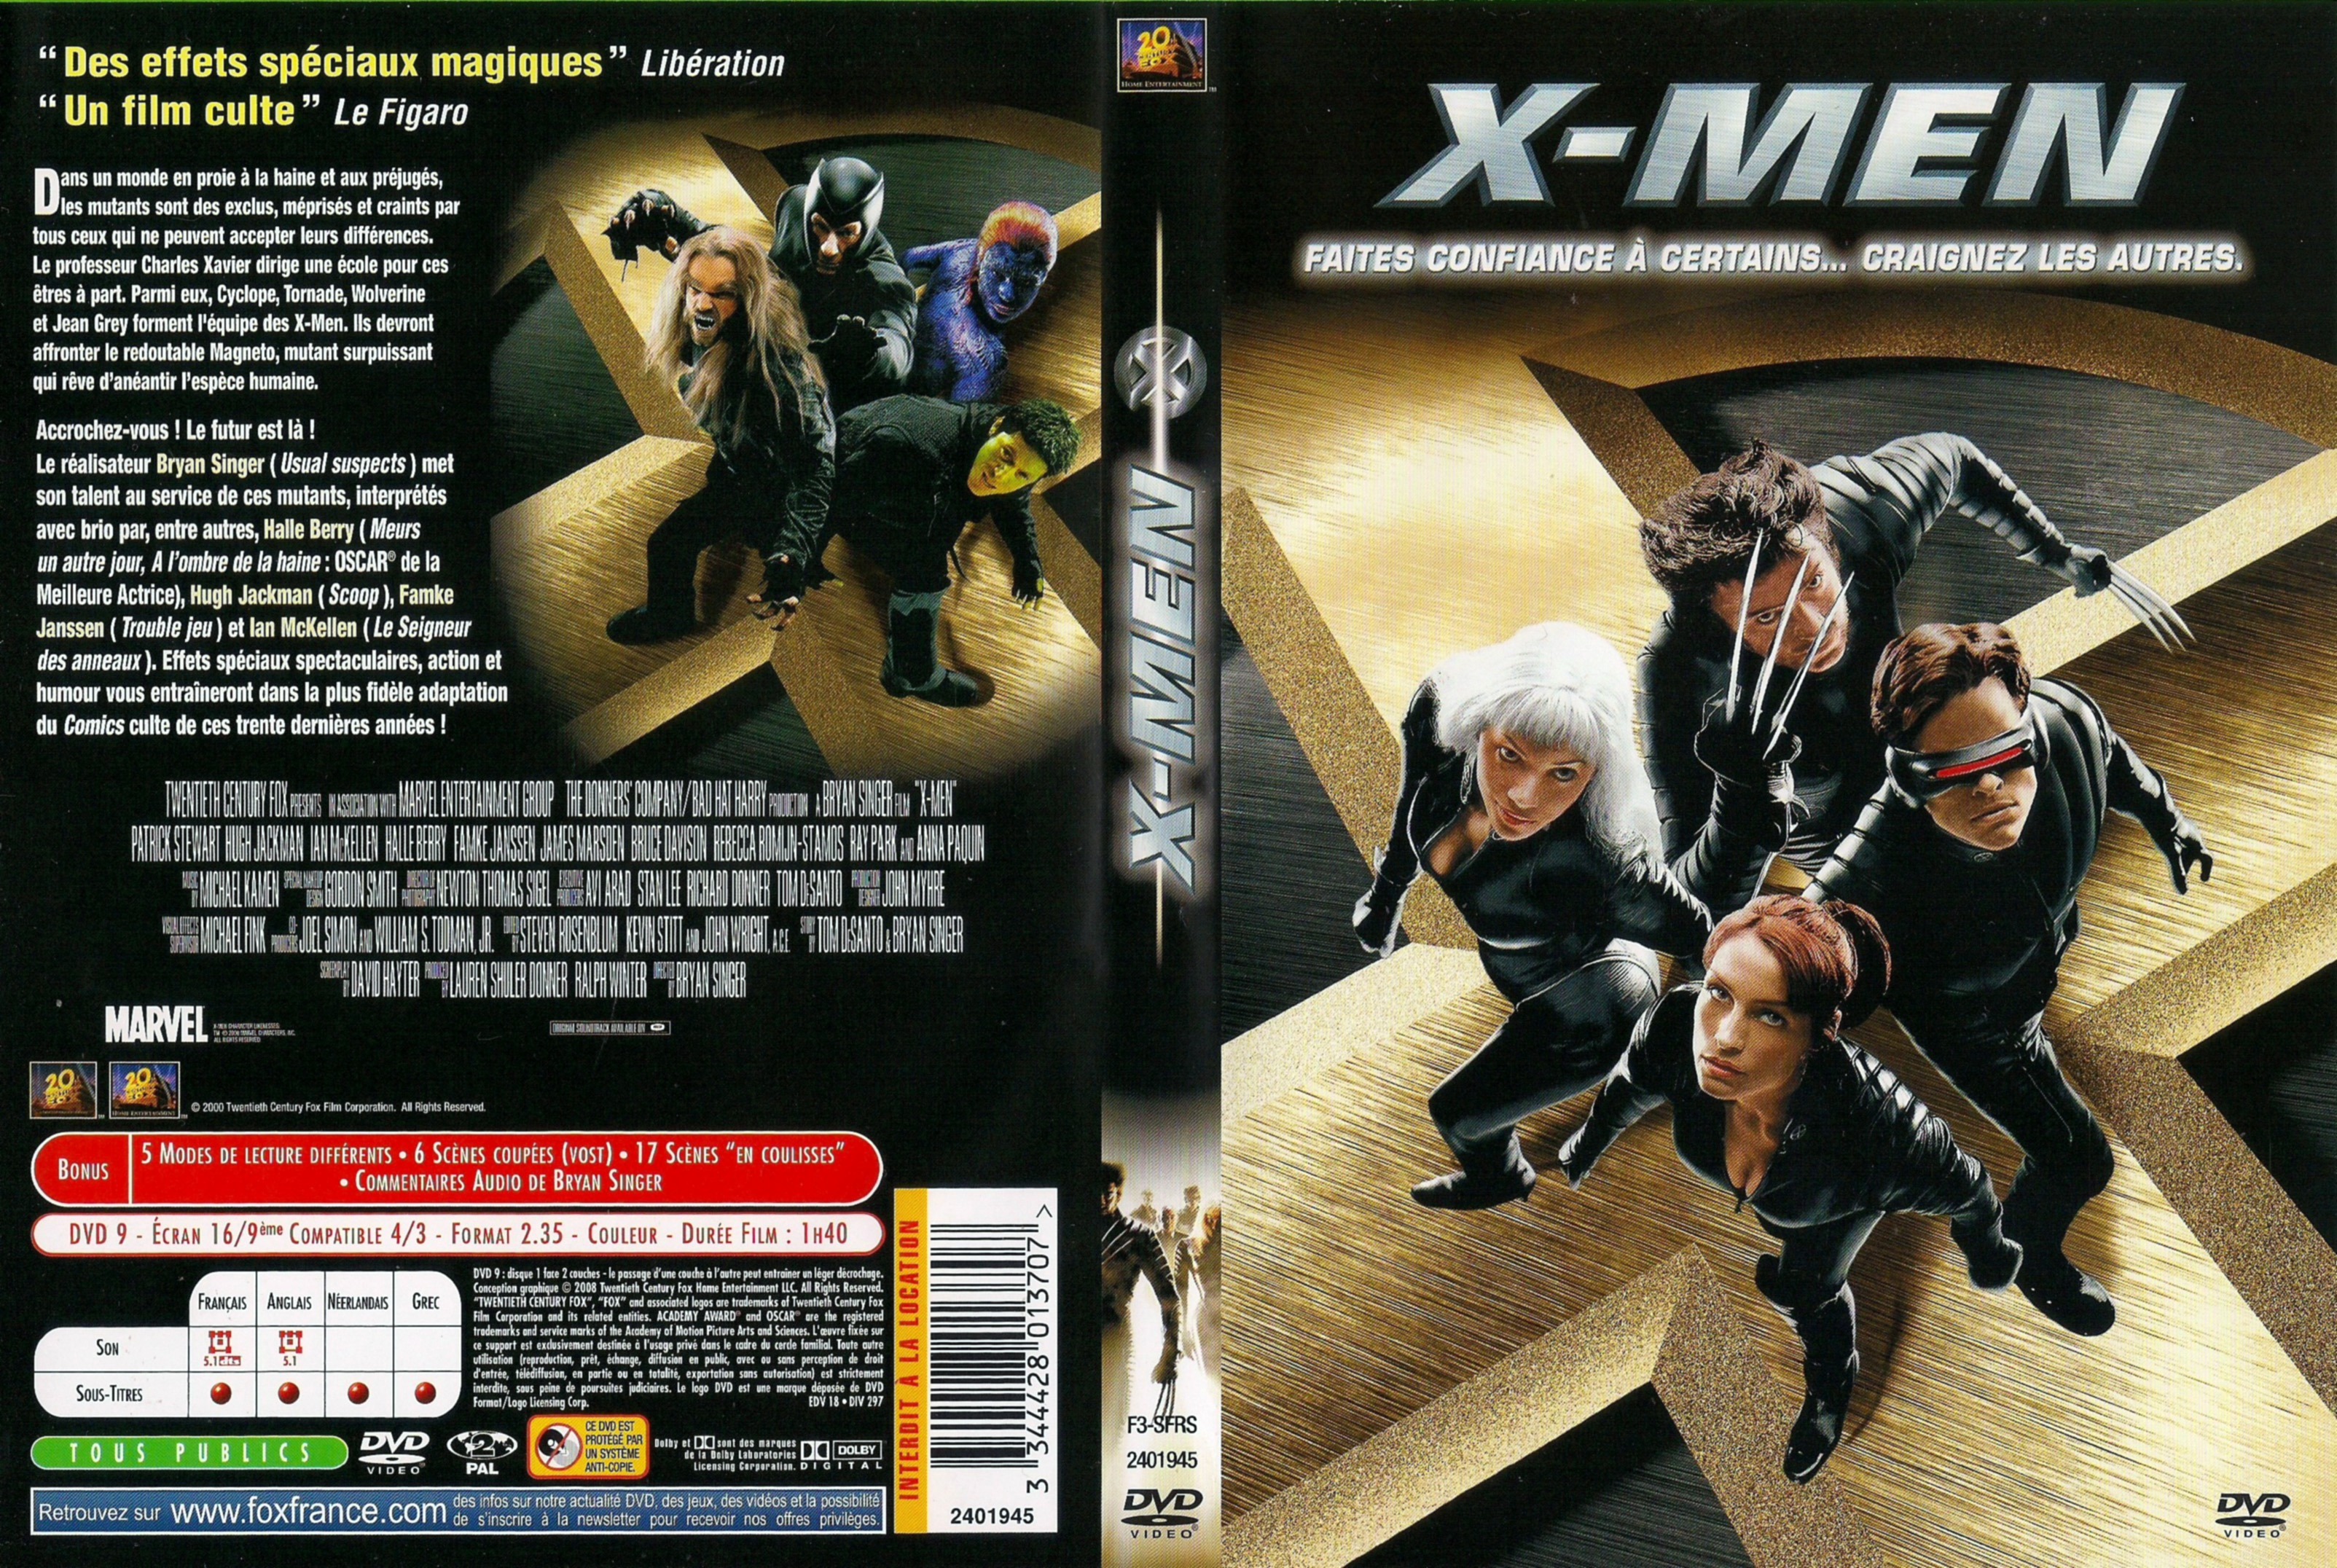 Jaquette DVD X-men v6